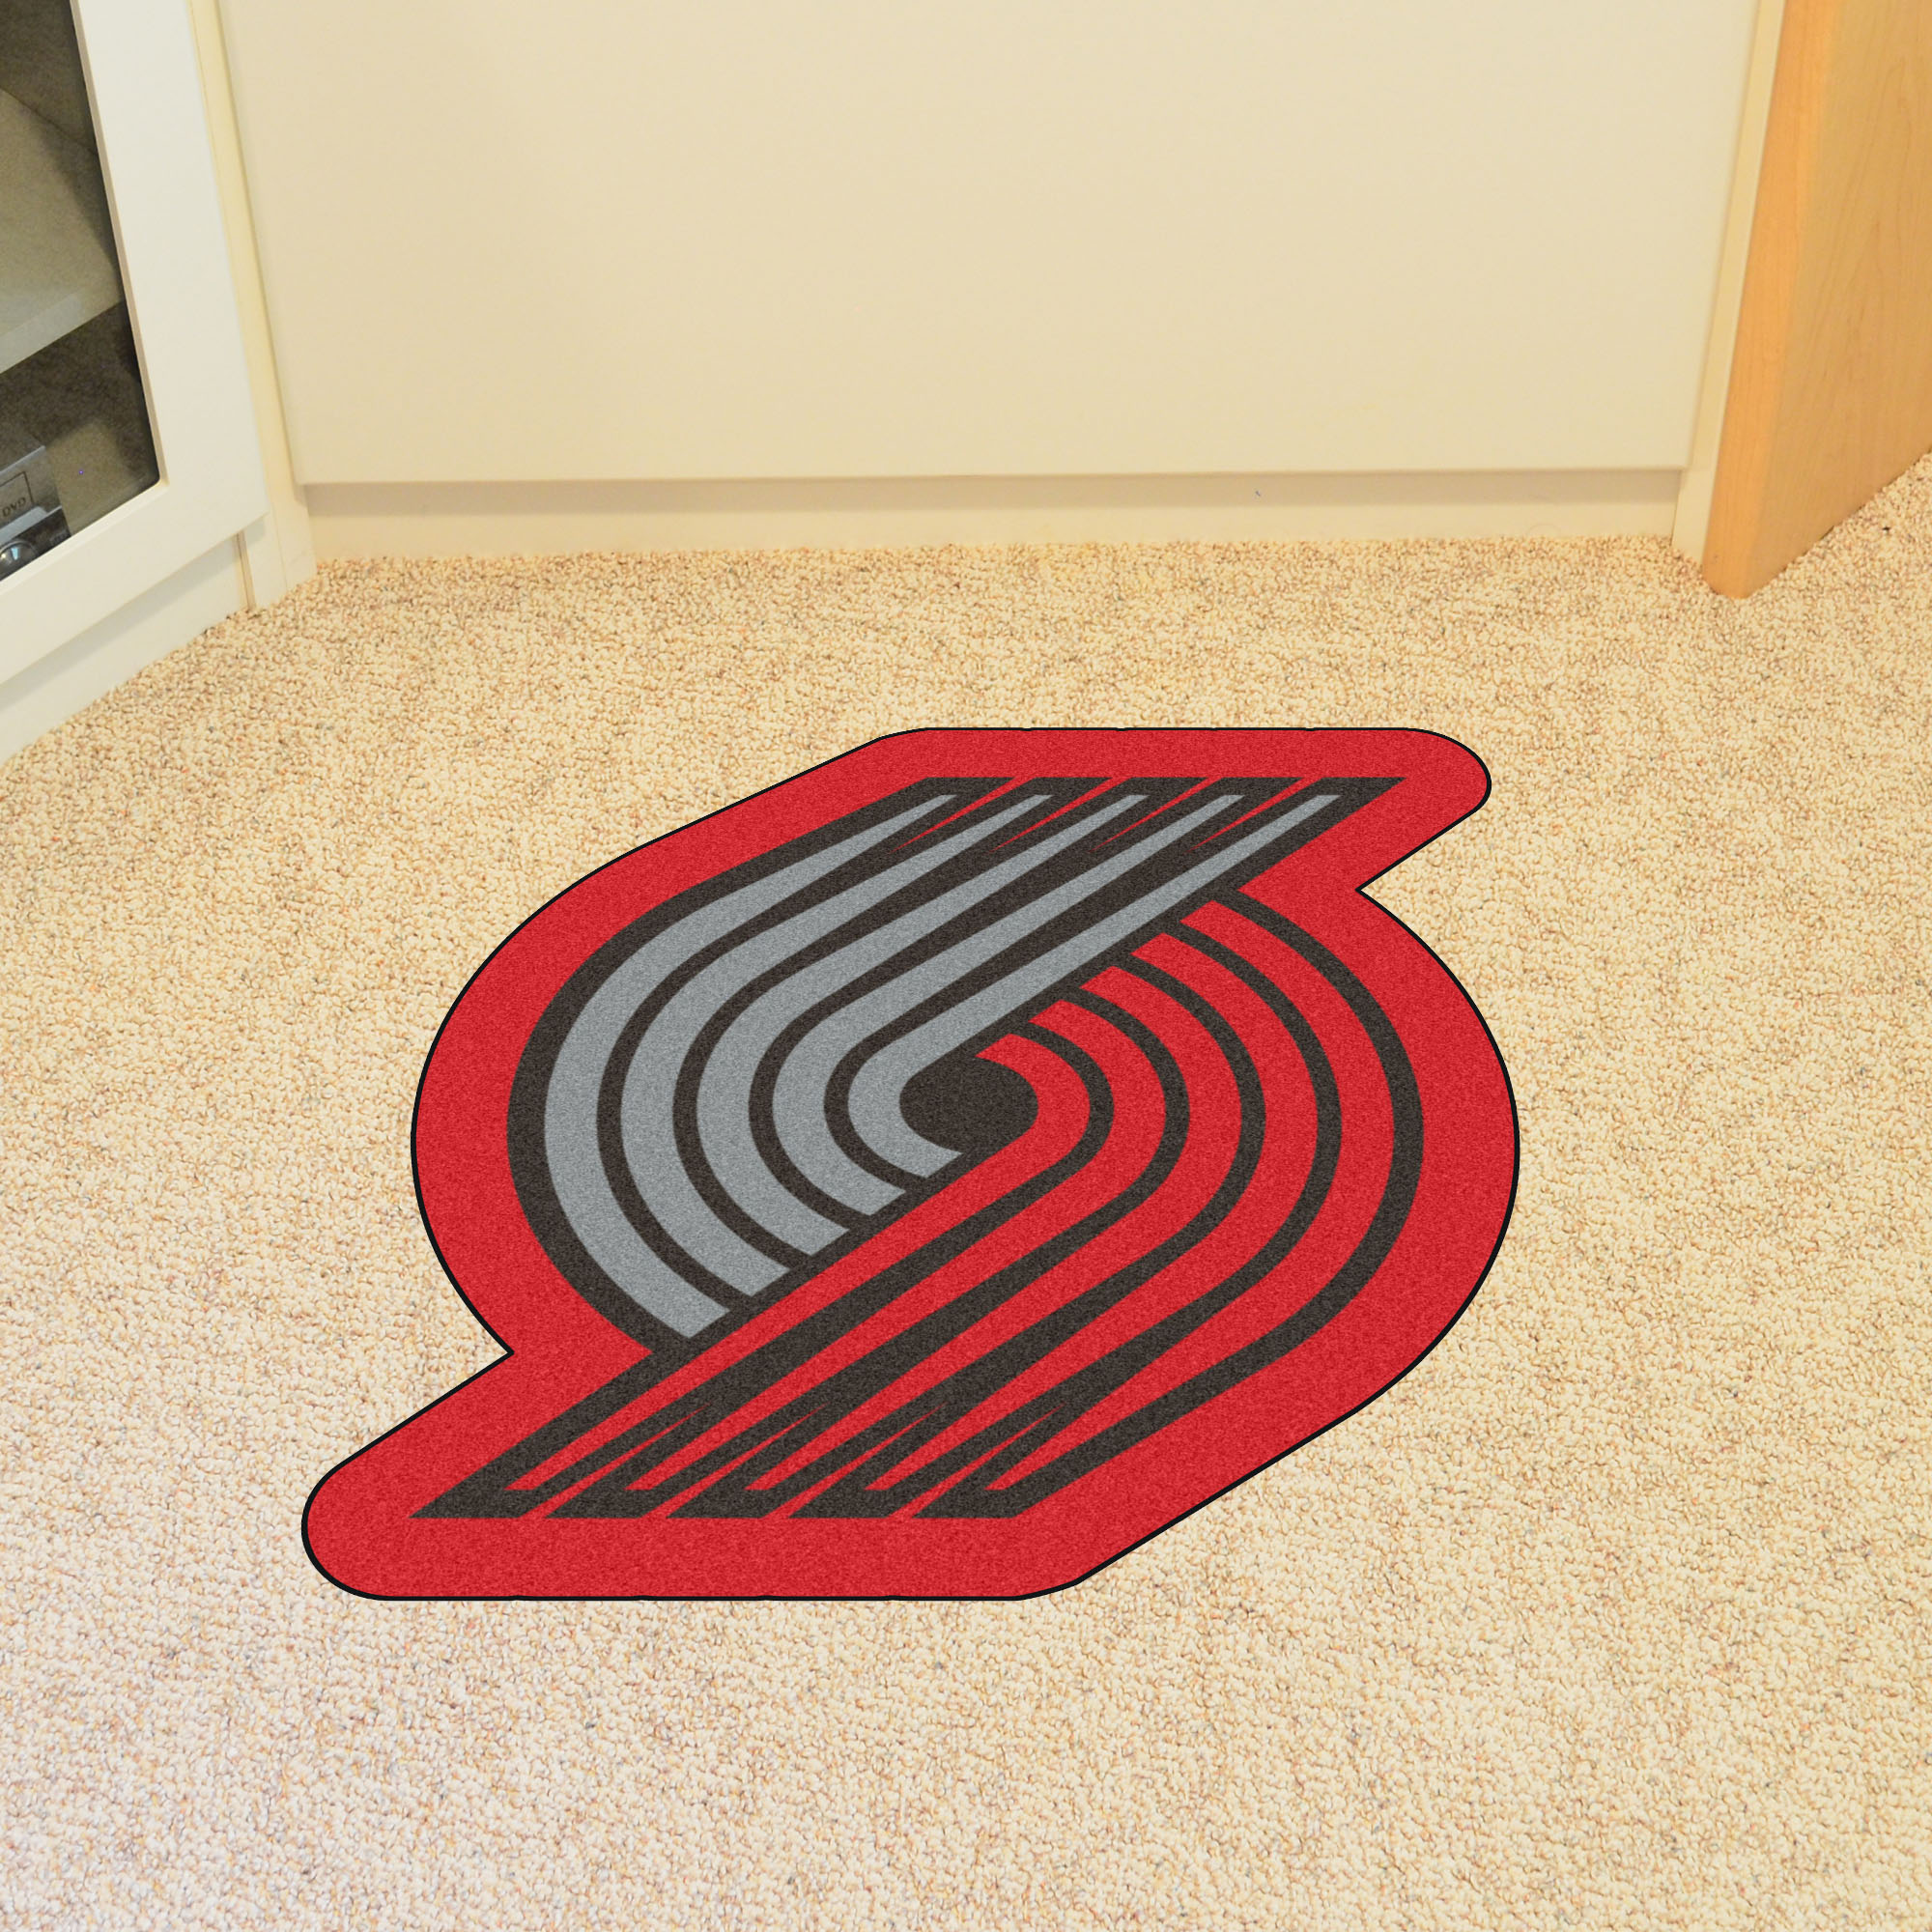 Portland Trail Blazers NBA Mascot Mat